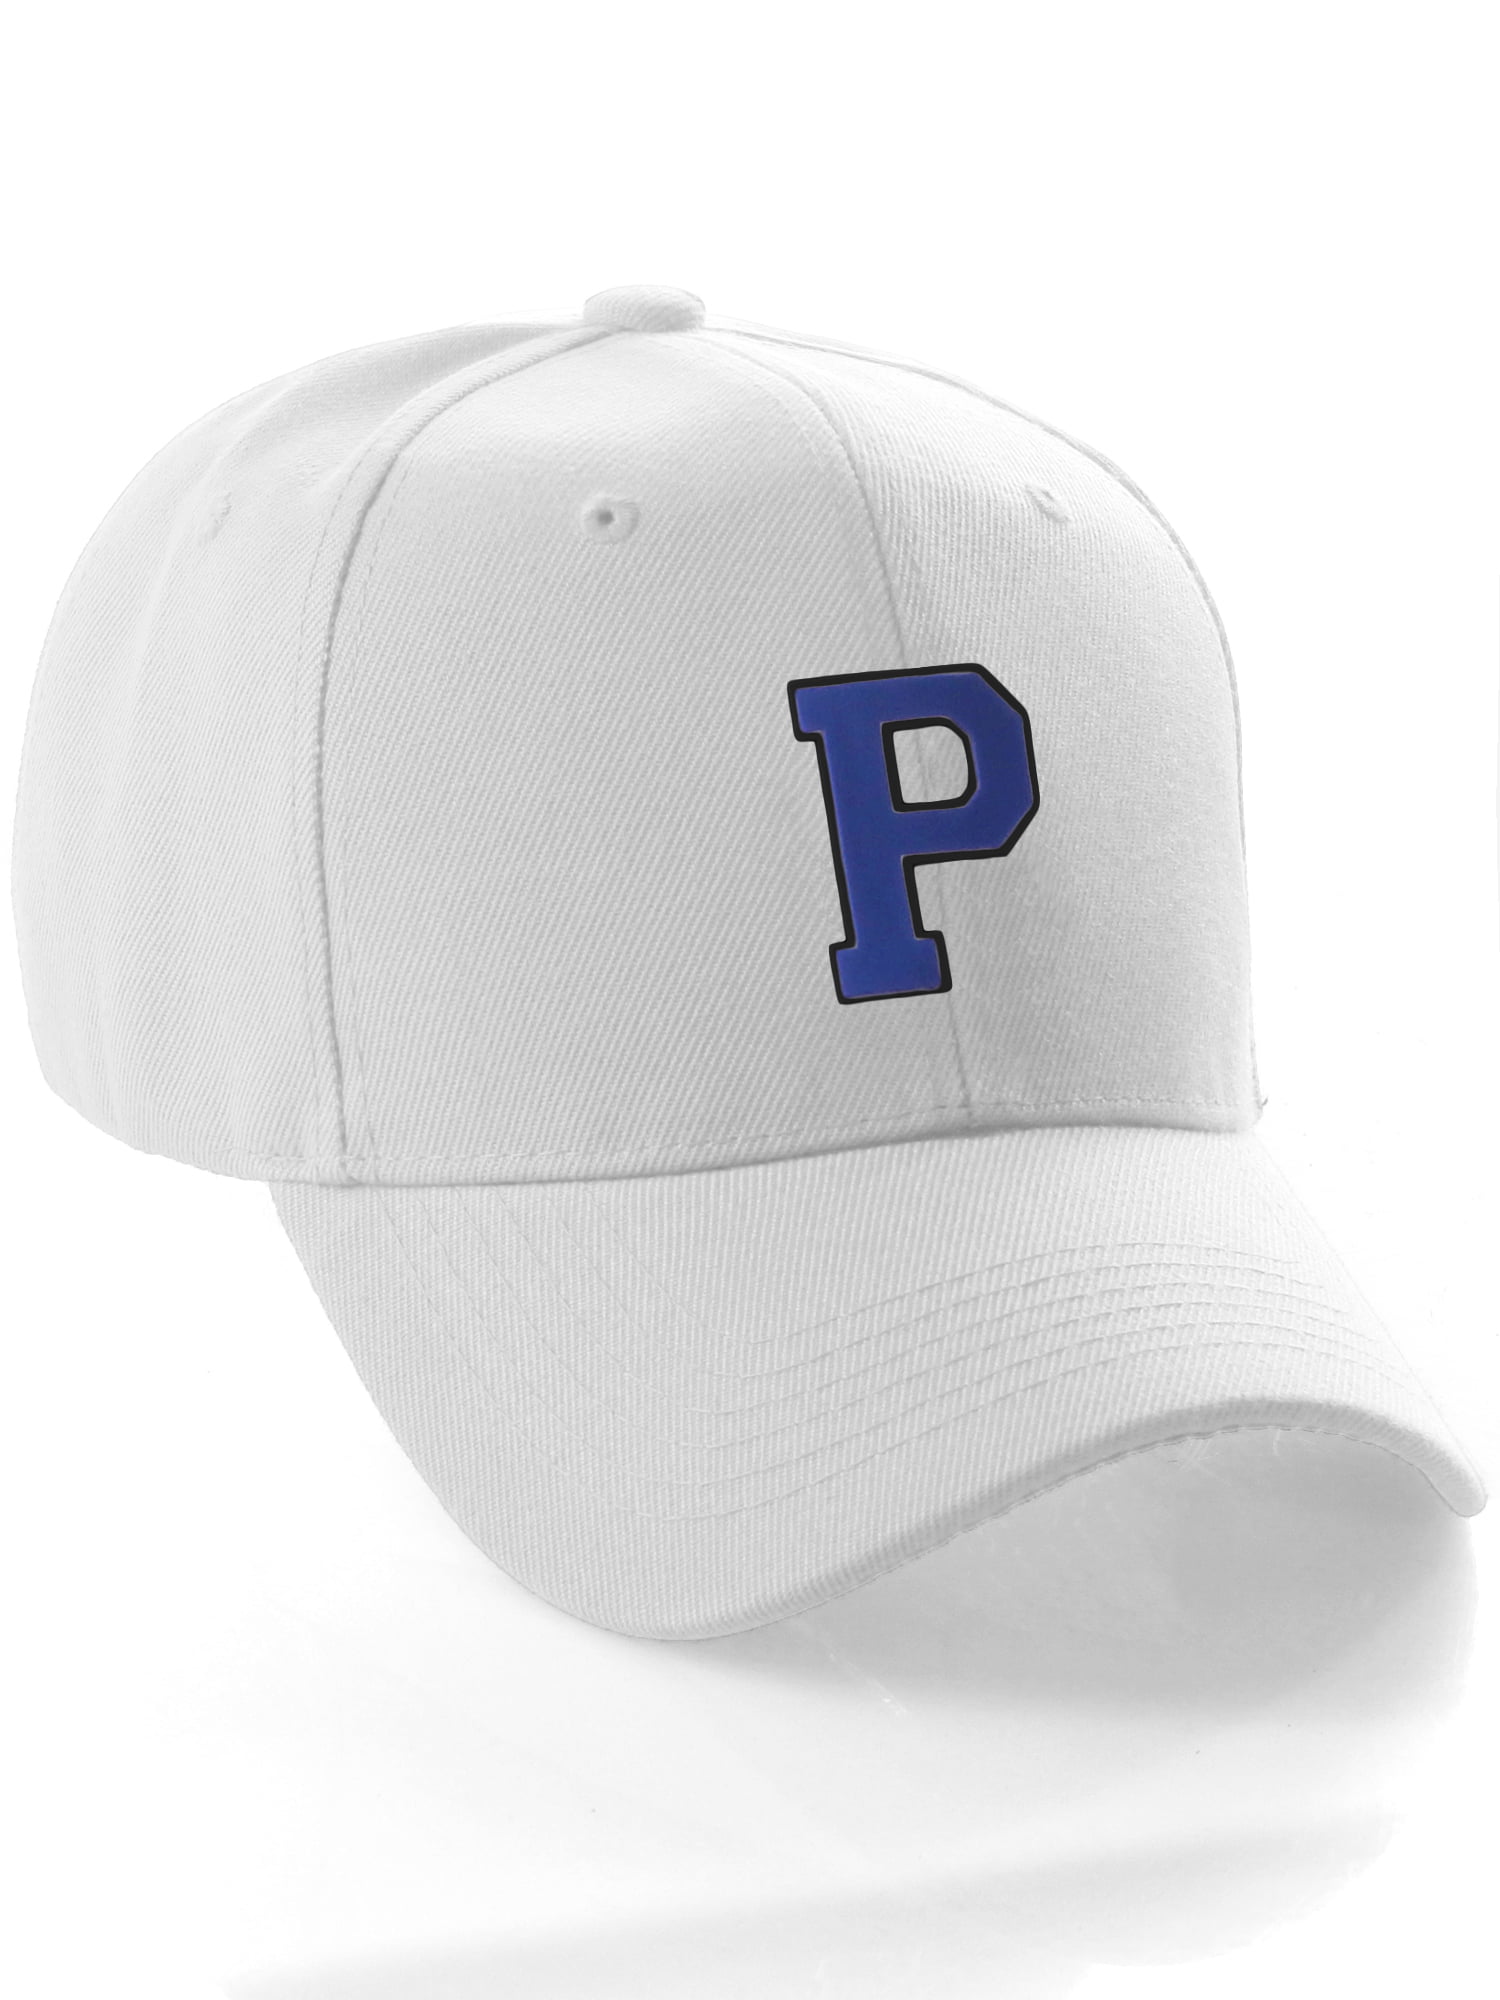 A Initial Hat Cap Custom Z Black White Classic Team to Letter, Blue P Baseball Letter